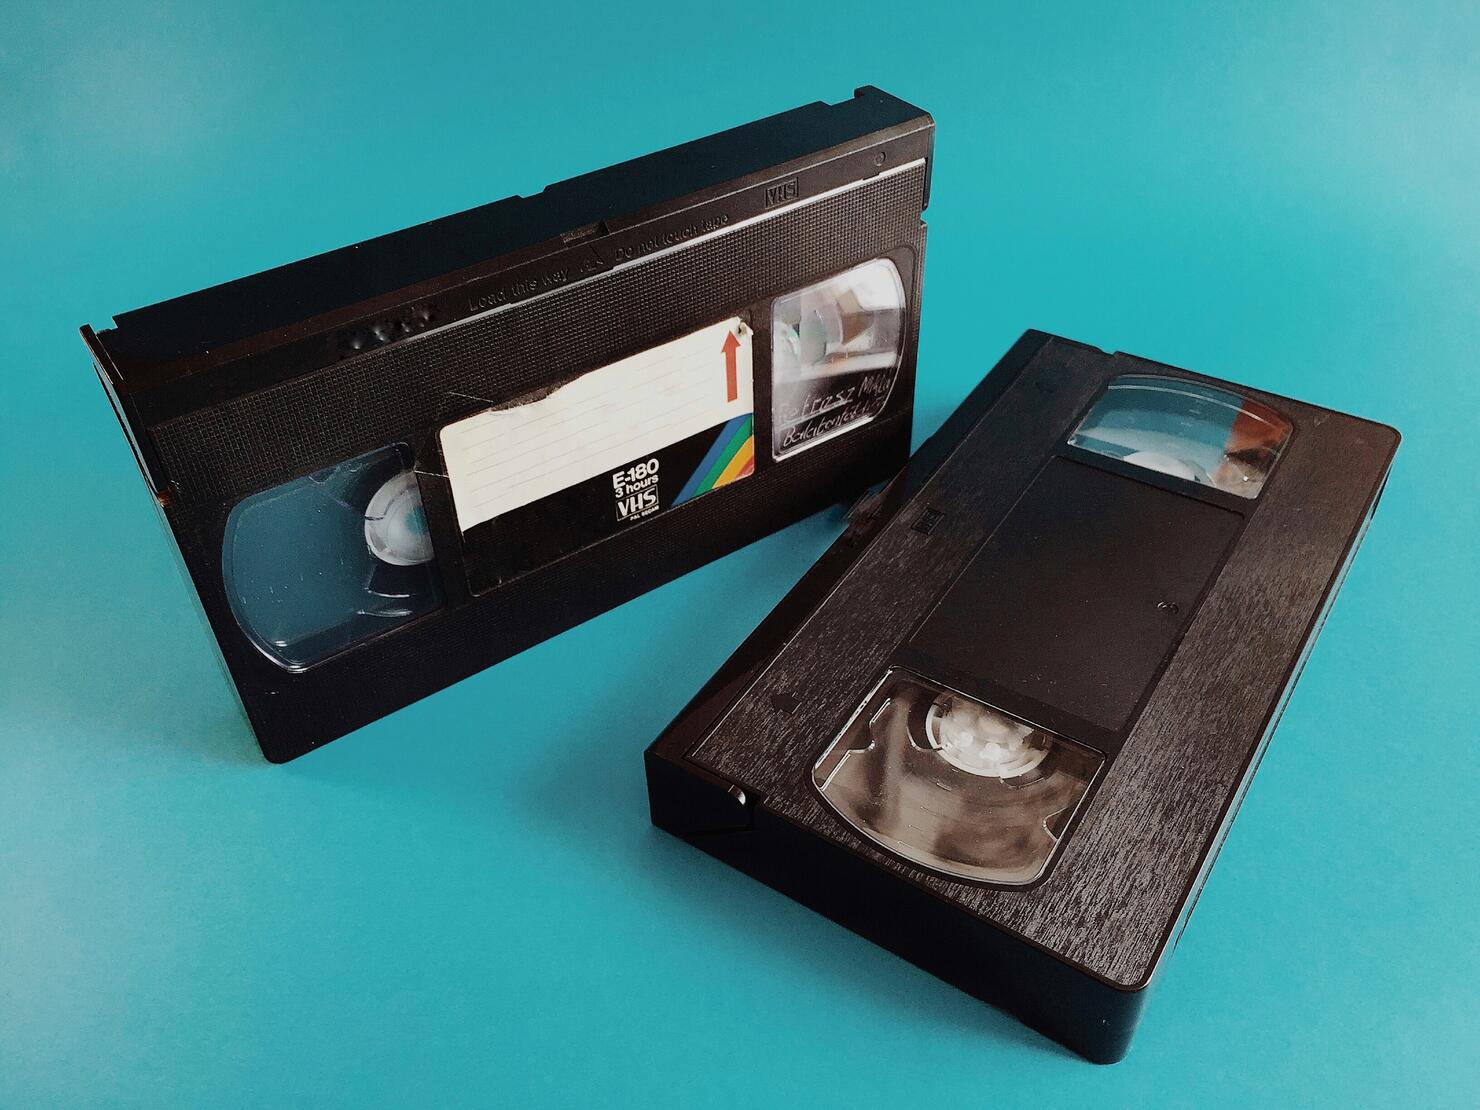 2 VHS casettes